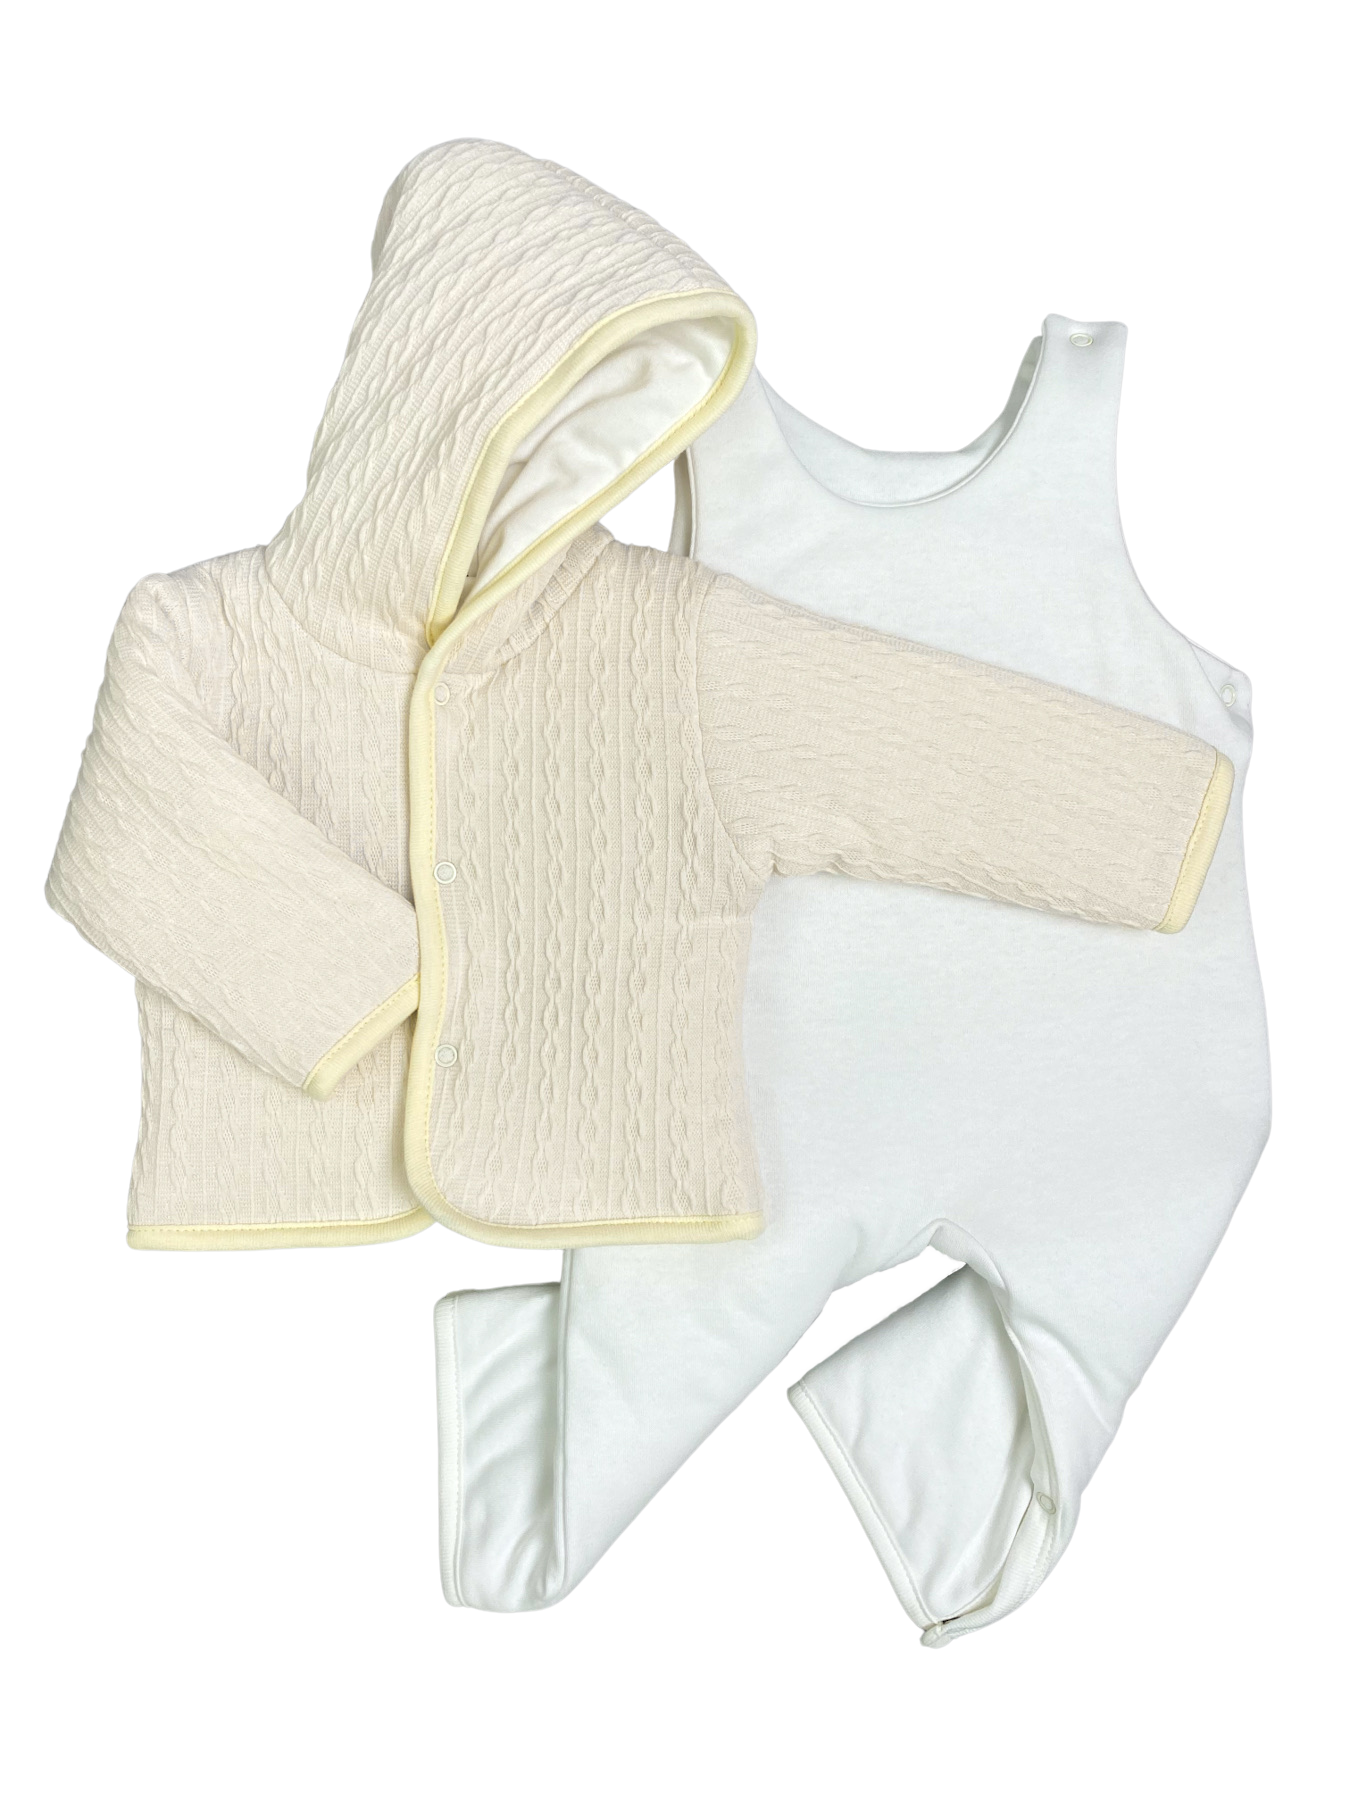 Комплект верхней одежды Clariss Вязаный микс, бежевый; белый, 62 комплект верхней одежды ad9329 yellow 140